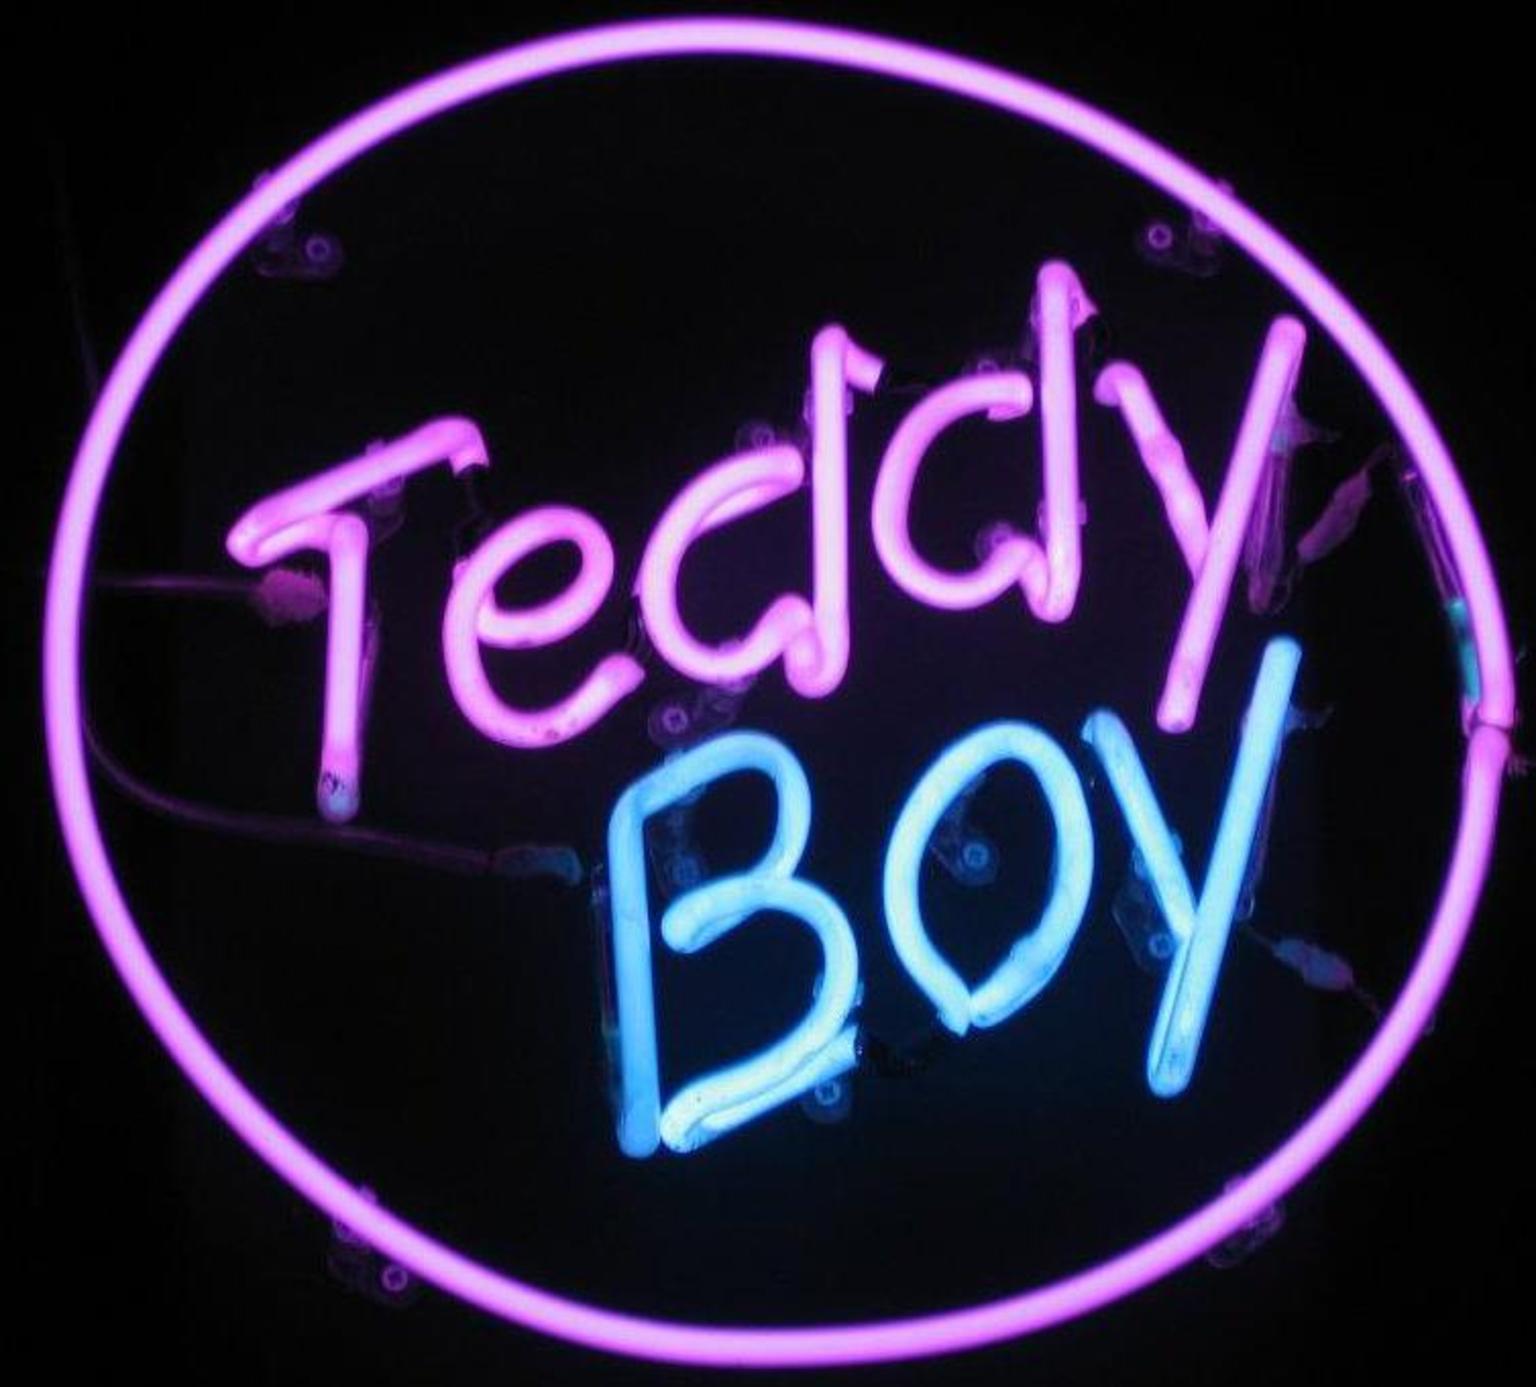 Teddy Boy